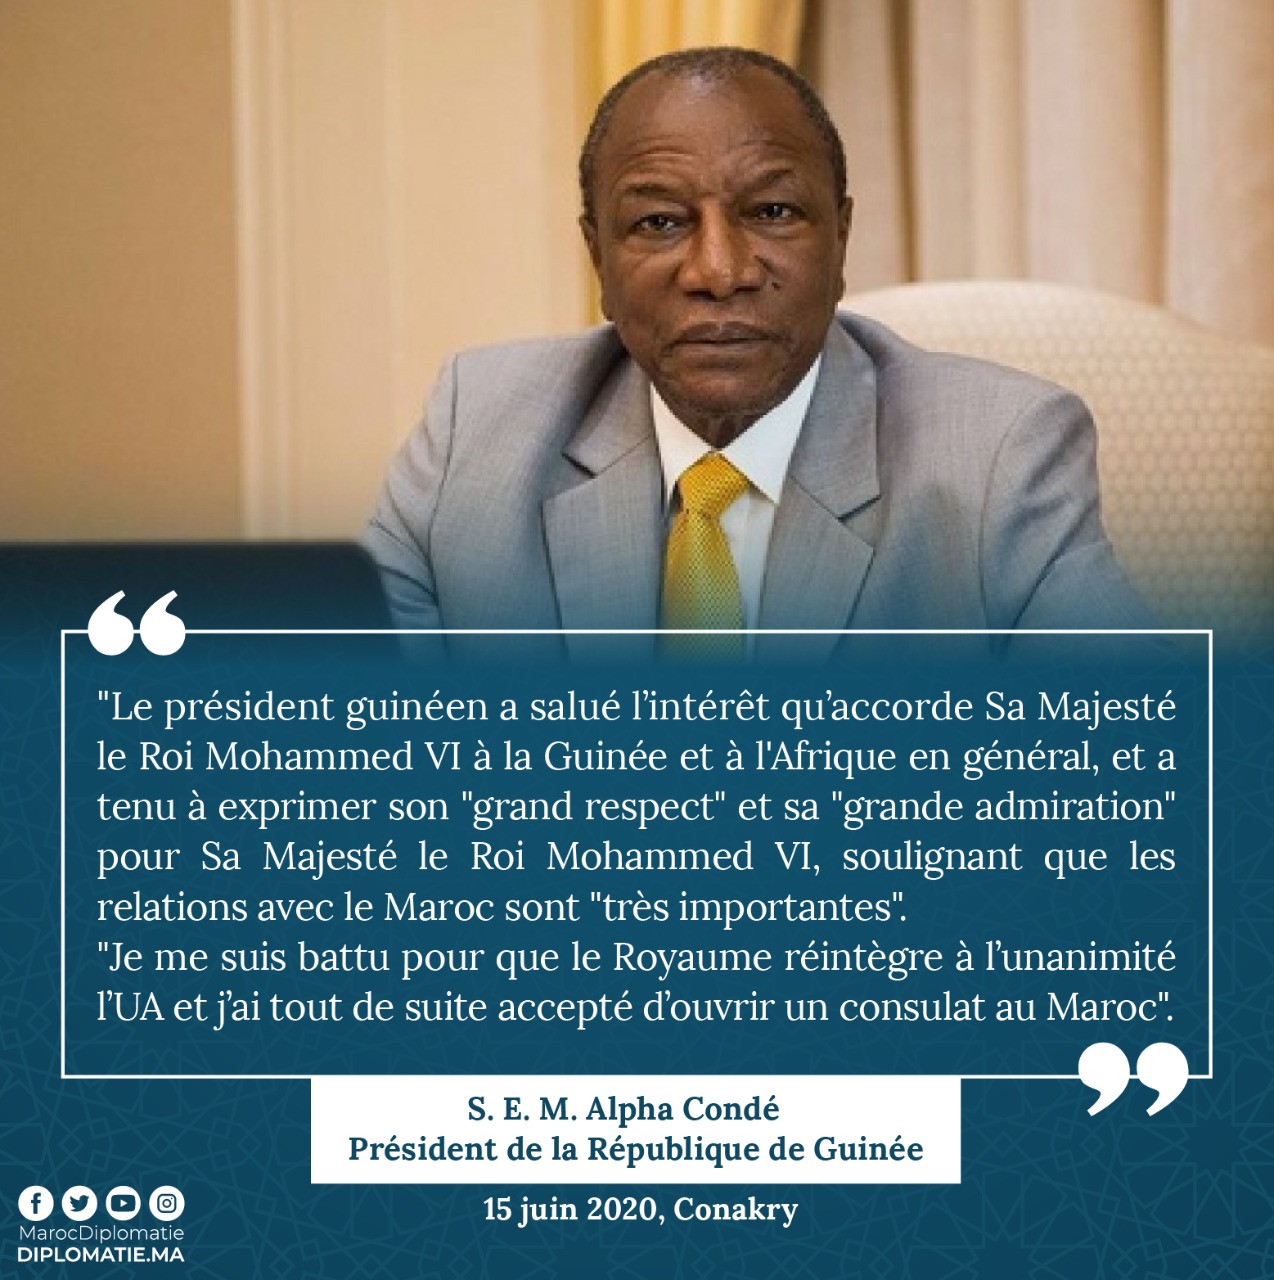 S. E M. Alpha Condé, Président de la République de Guinée